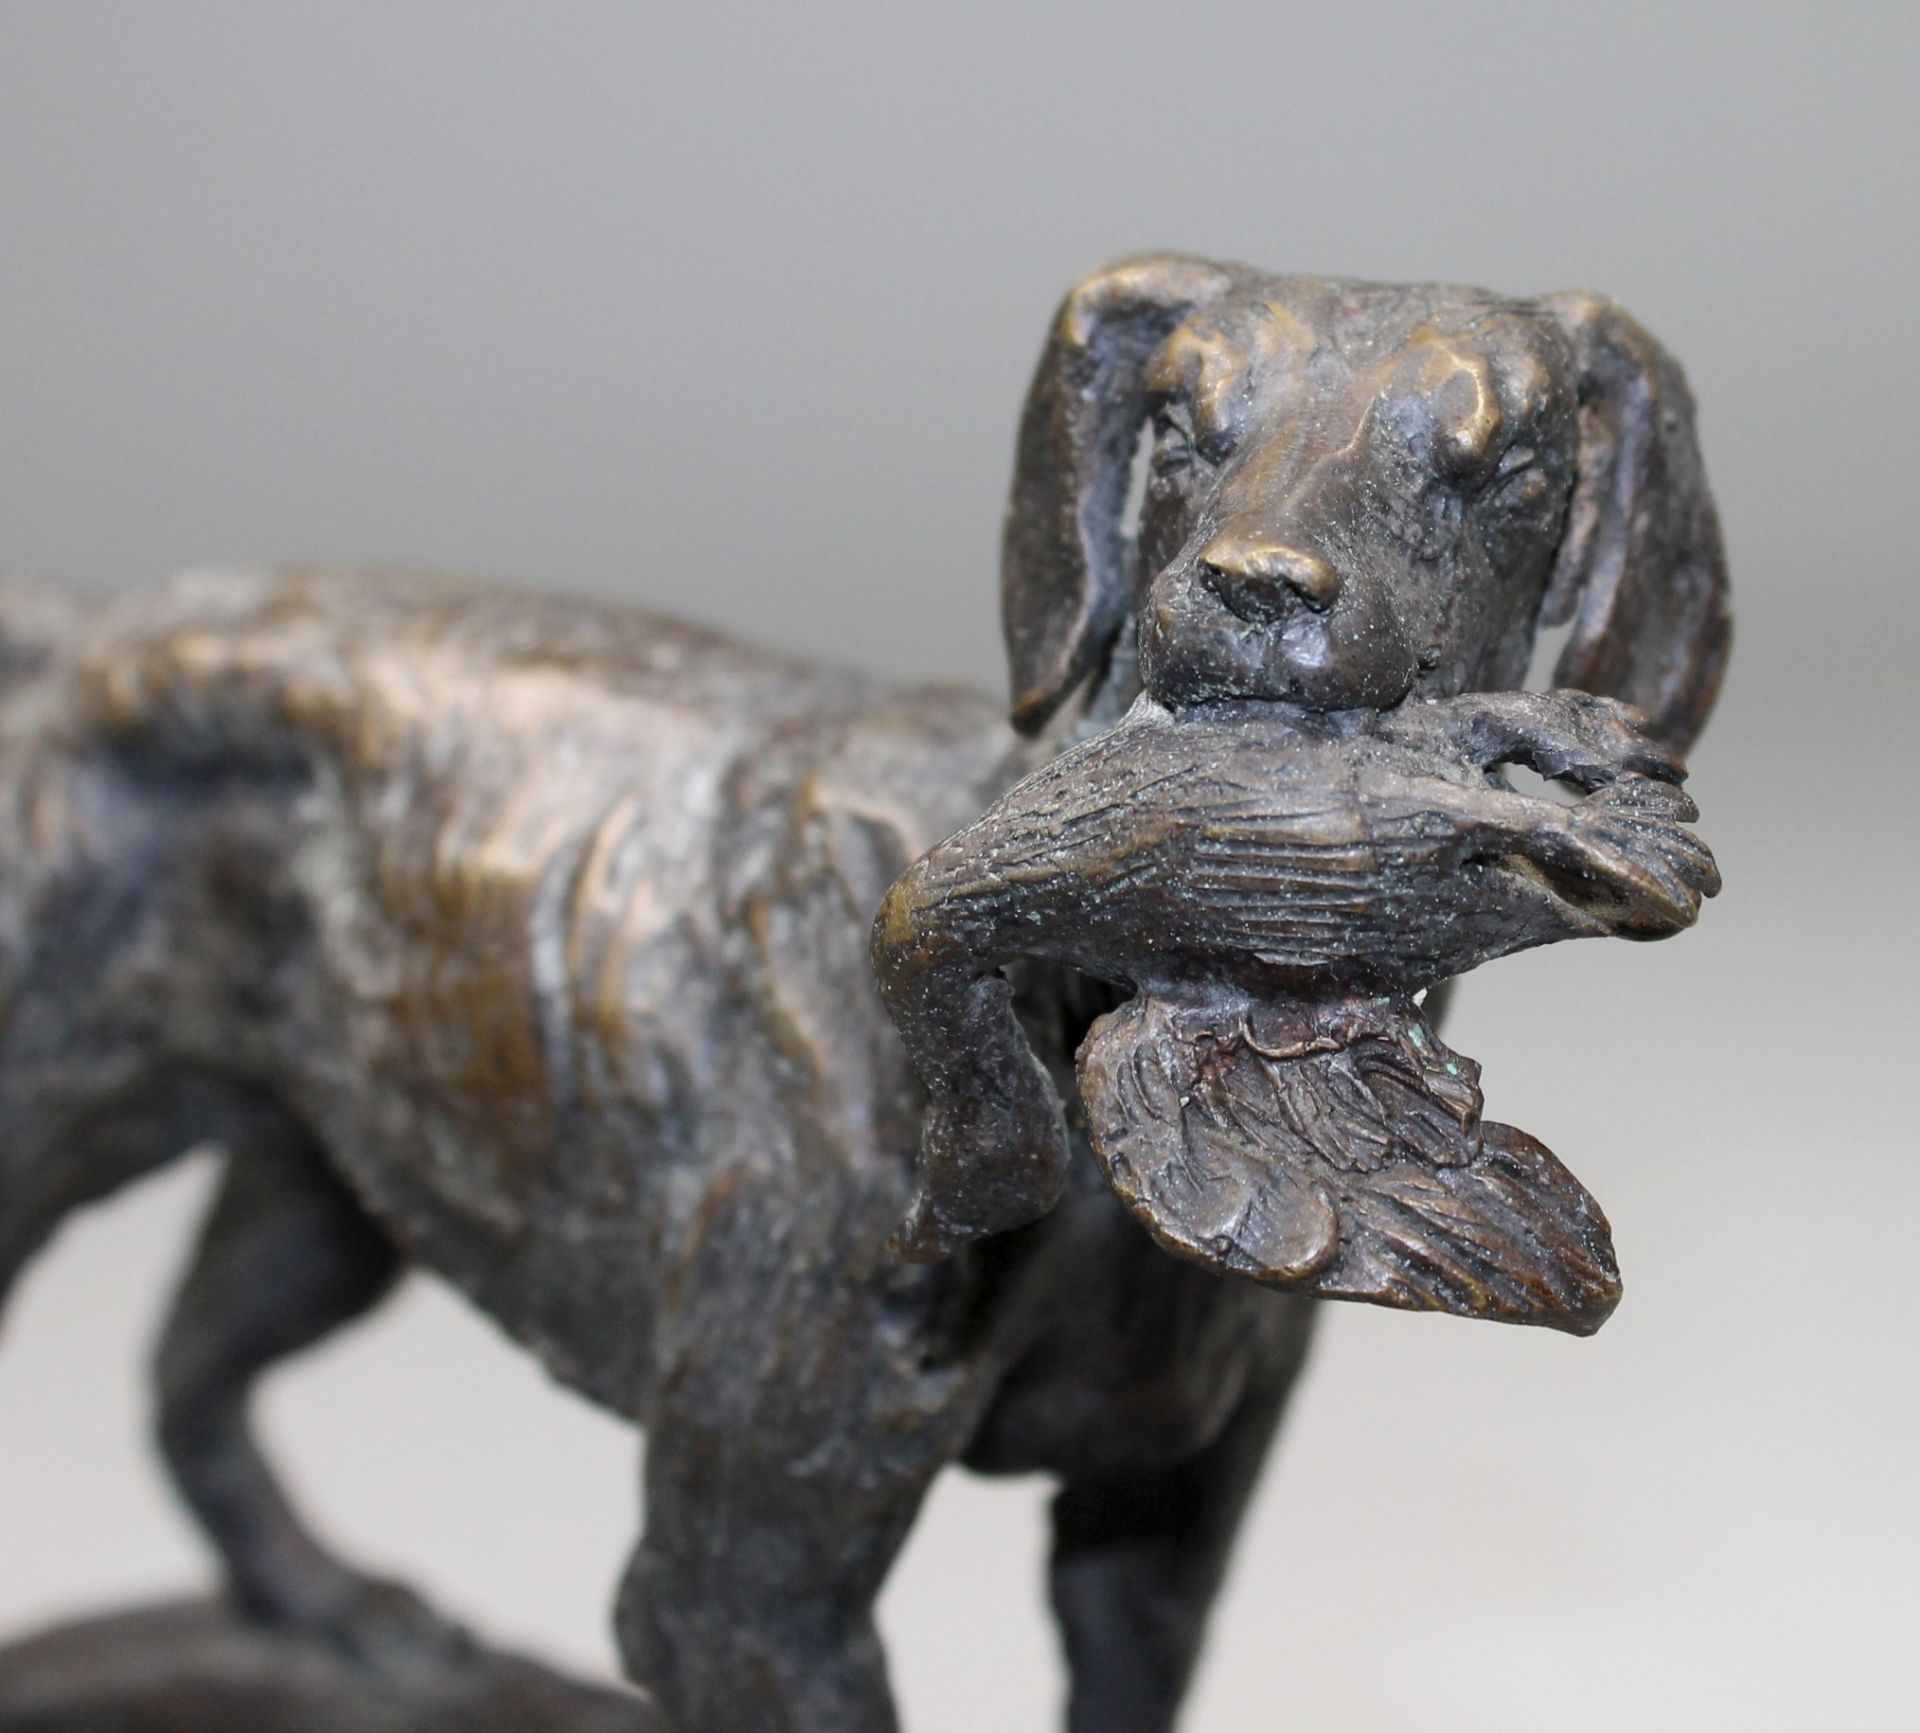 1 Bronzefigur auf Marmorplinthe "Jagdhund mit Beute im Maul", keine Signatur erkennbar, ca. 18,5cm x - Bild 3 aus 4